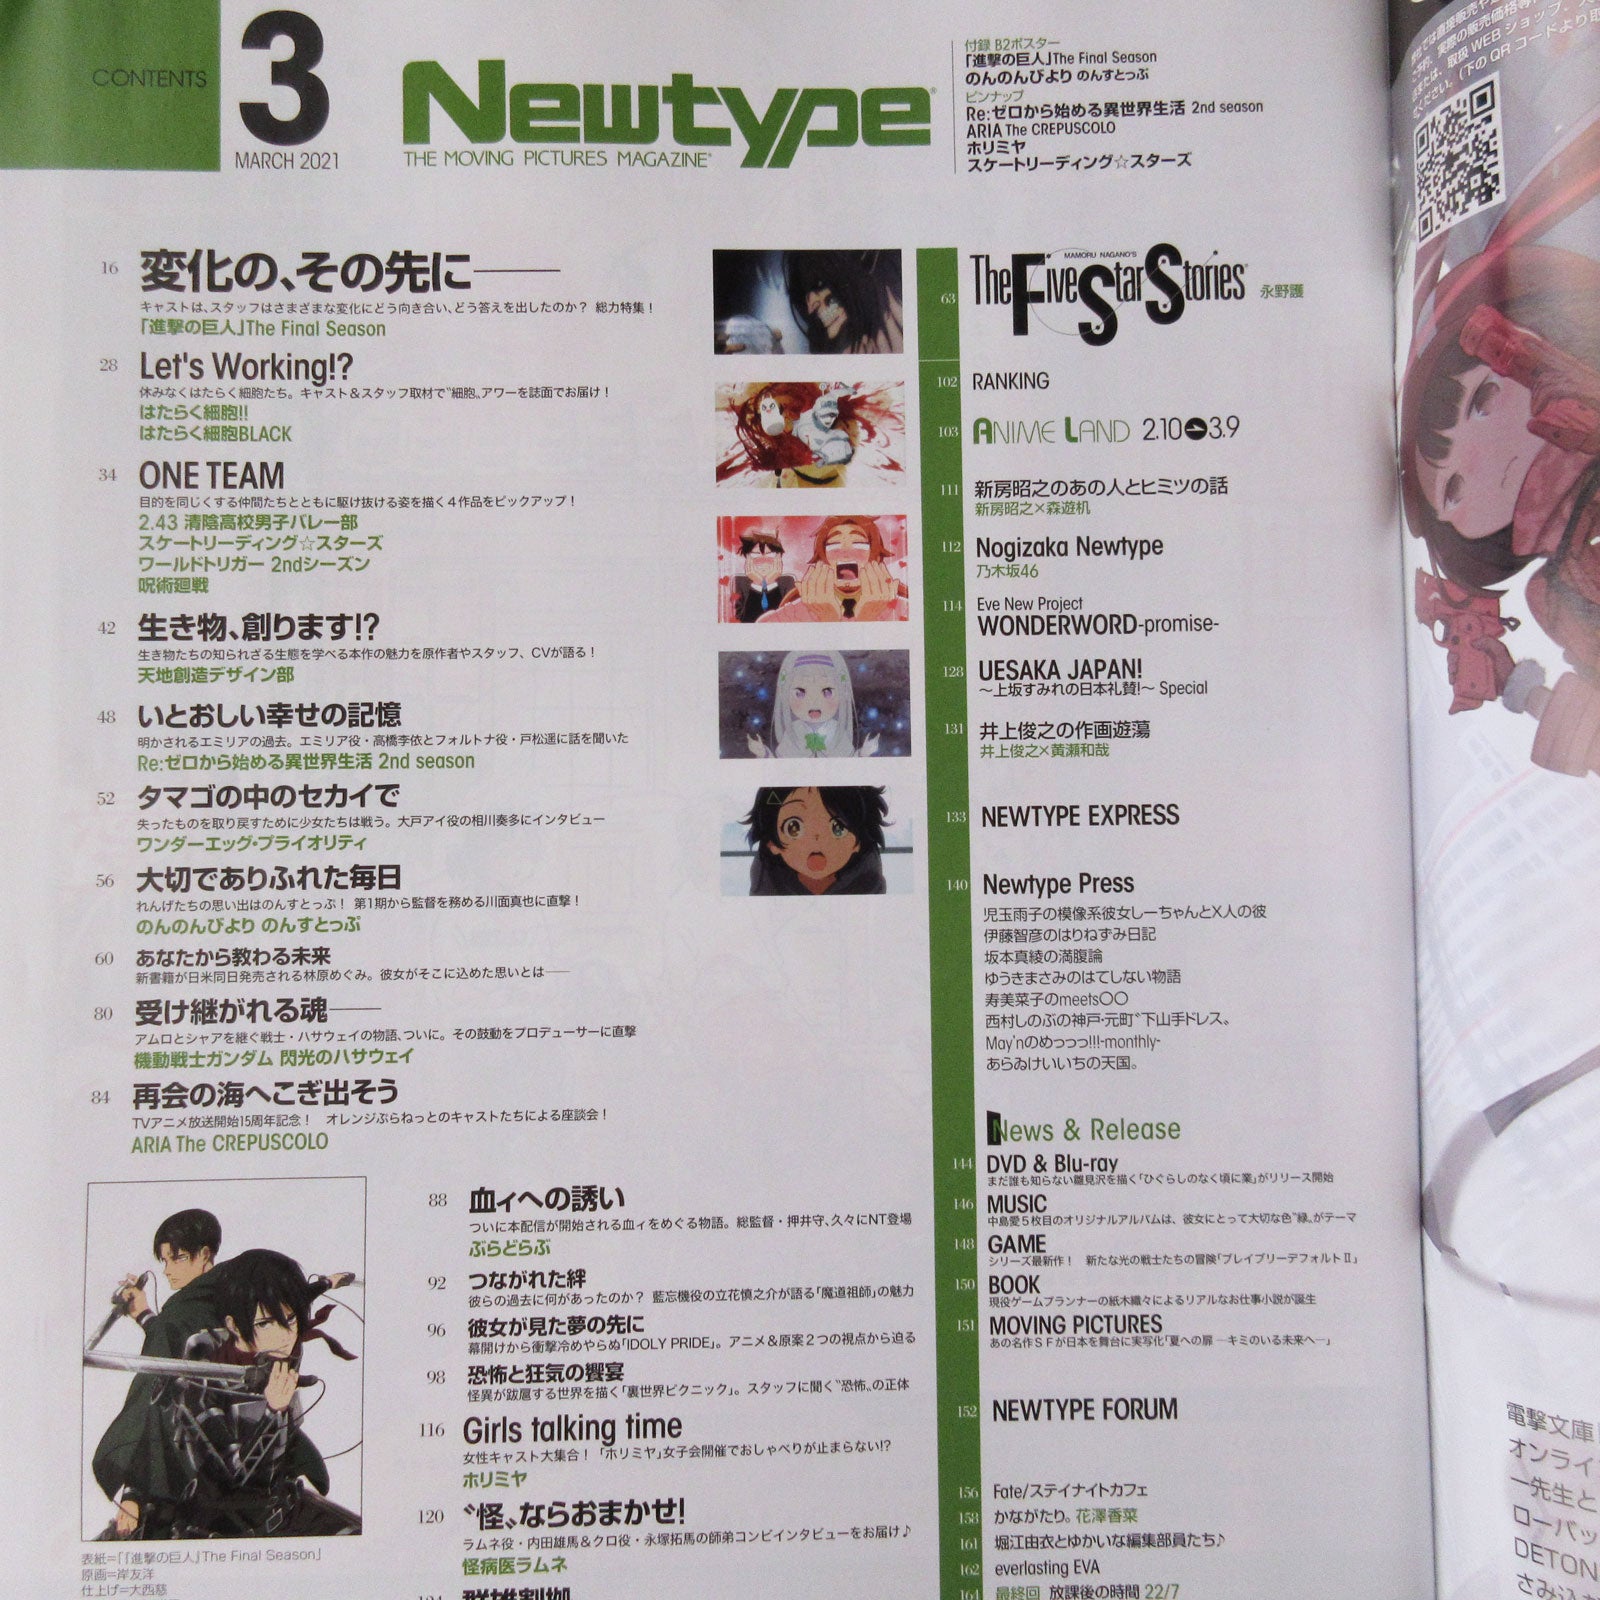 Buy Magazine - Animeland 103 